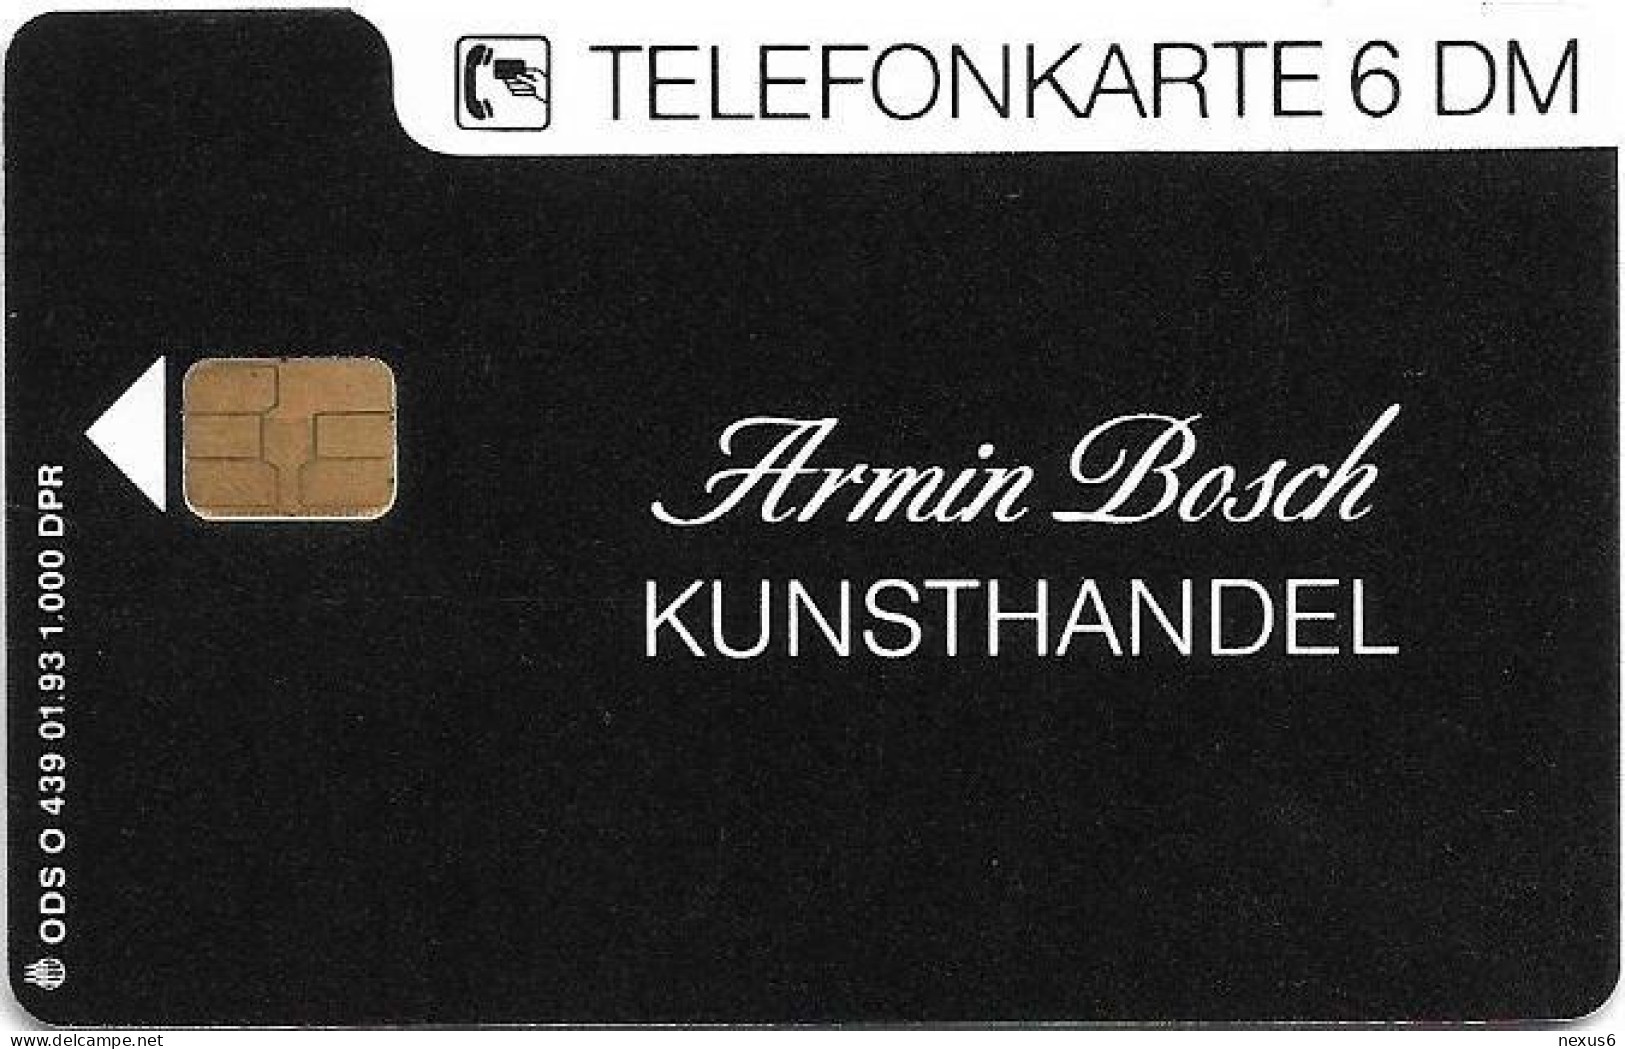 Germany - Kunsthandel Armin Bosch - O 0439 - 01.1993, 6DM, 1.000ex, Mint - O-Series: Kundenserie Vom Sammlerservice Ausgeschlossen